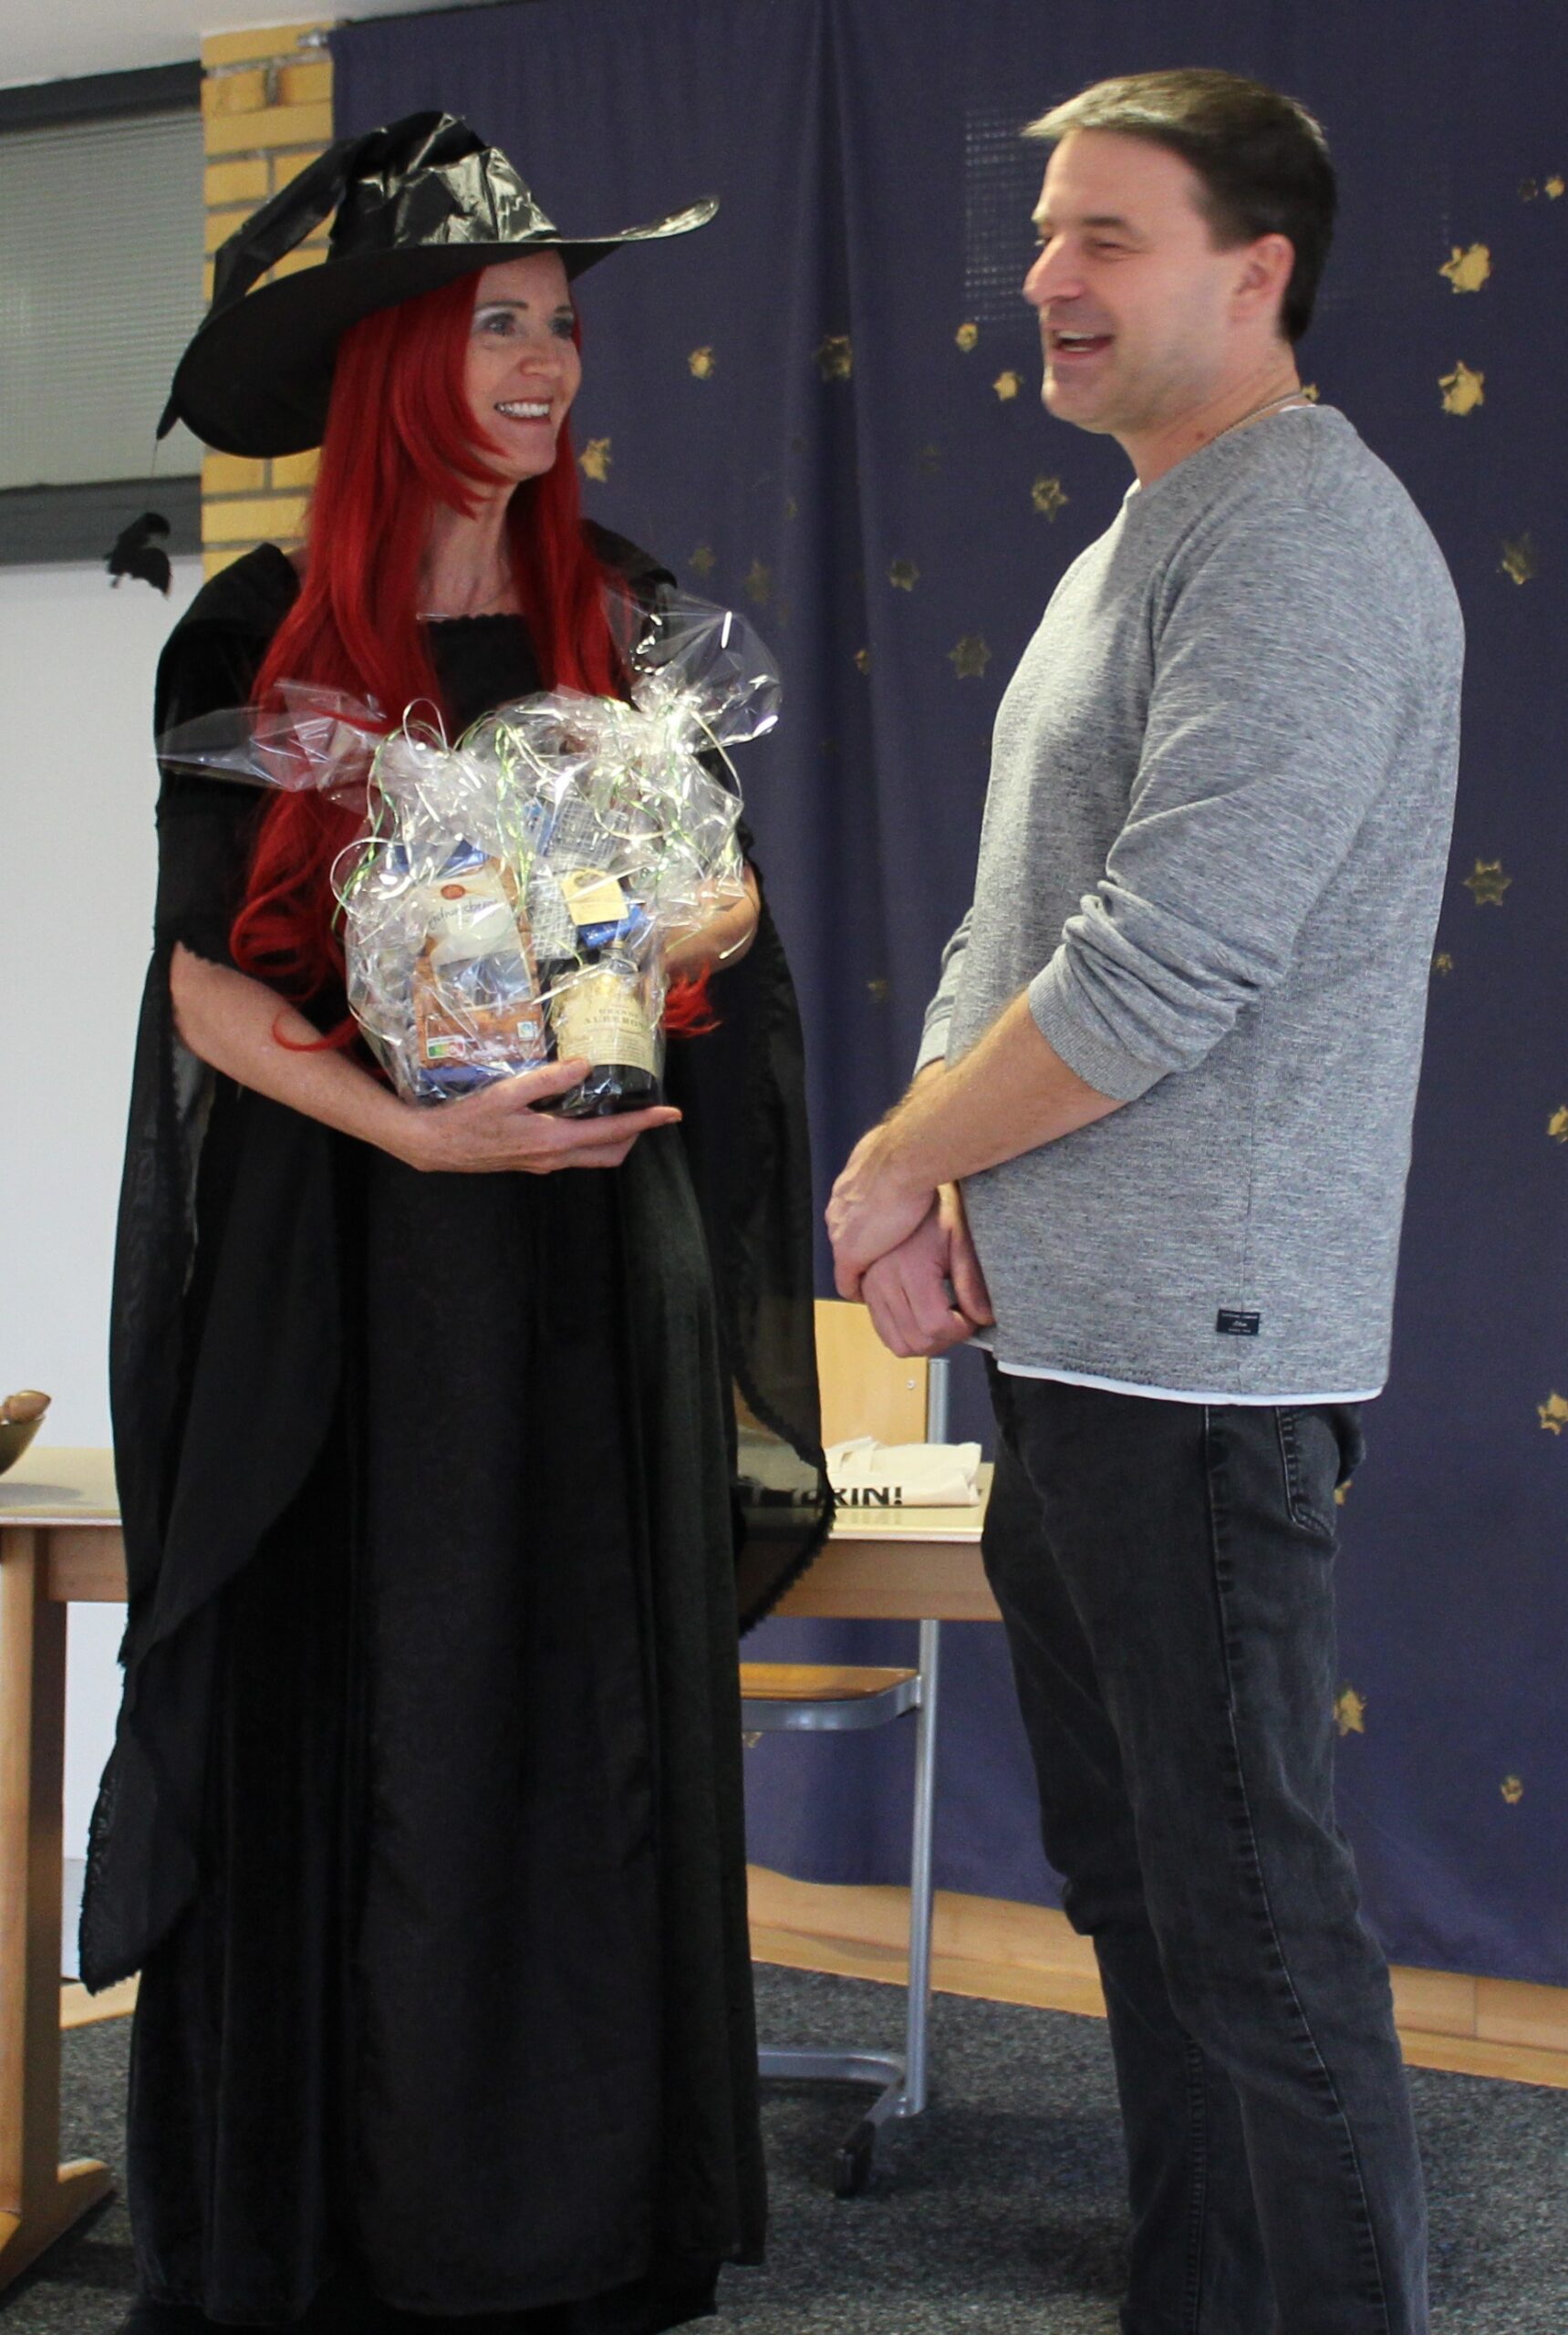 Die als Hexe verkleidete Rektorin überreicht Herrn Vetter ein Geschenk als Dankeschön.